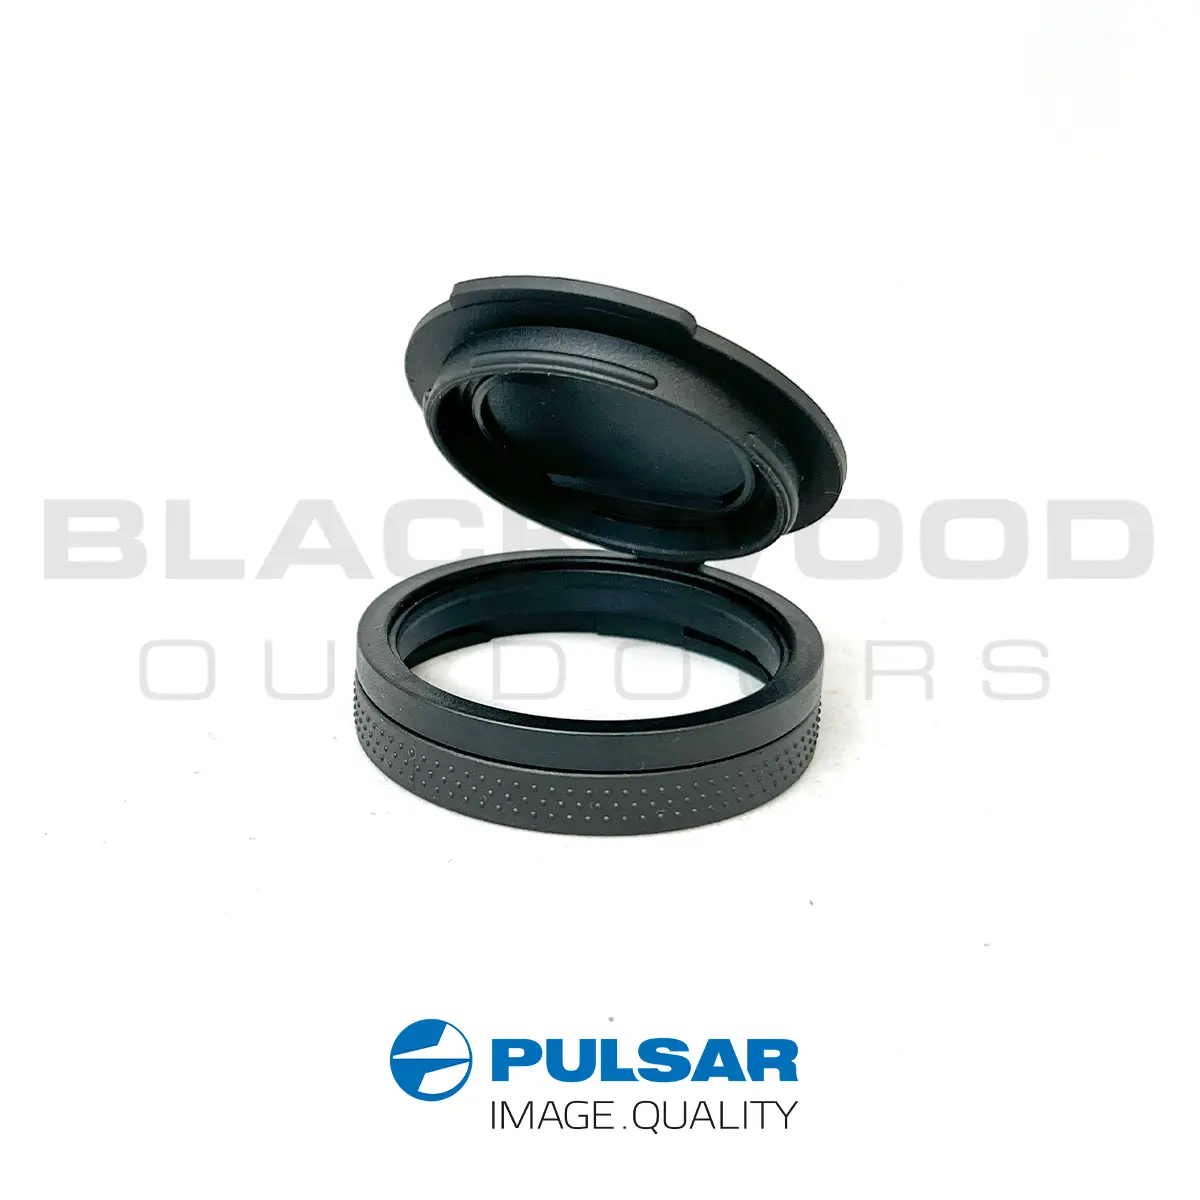 Pulsar Merger Replacement Lens Cap XP50, XL50